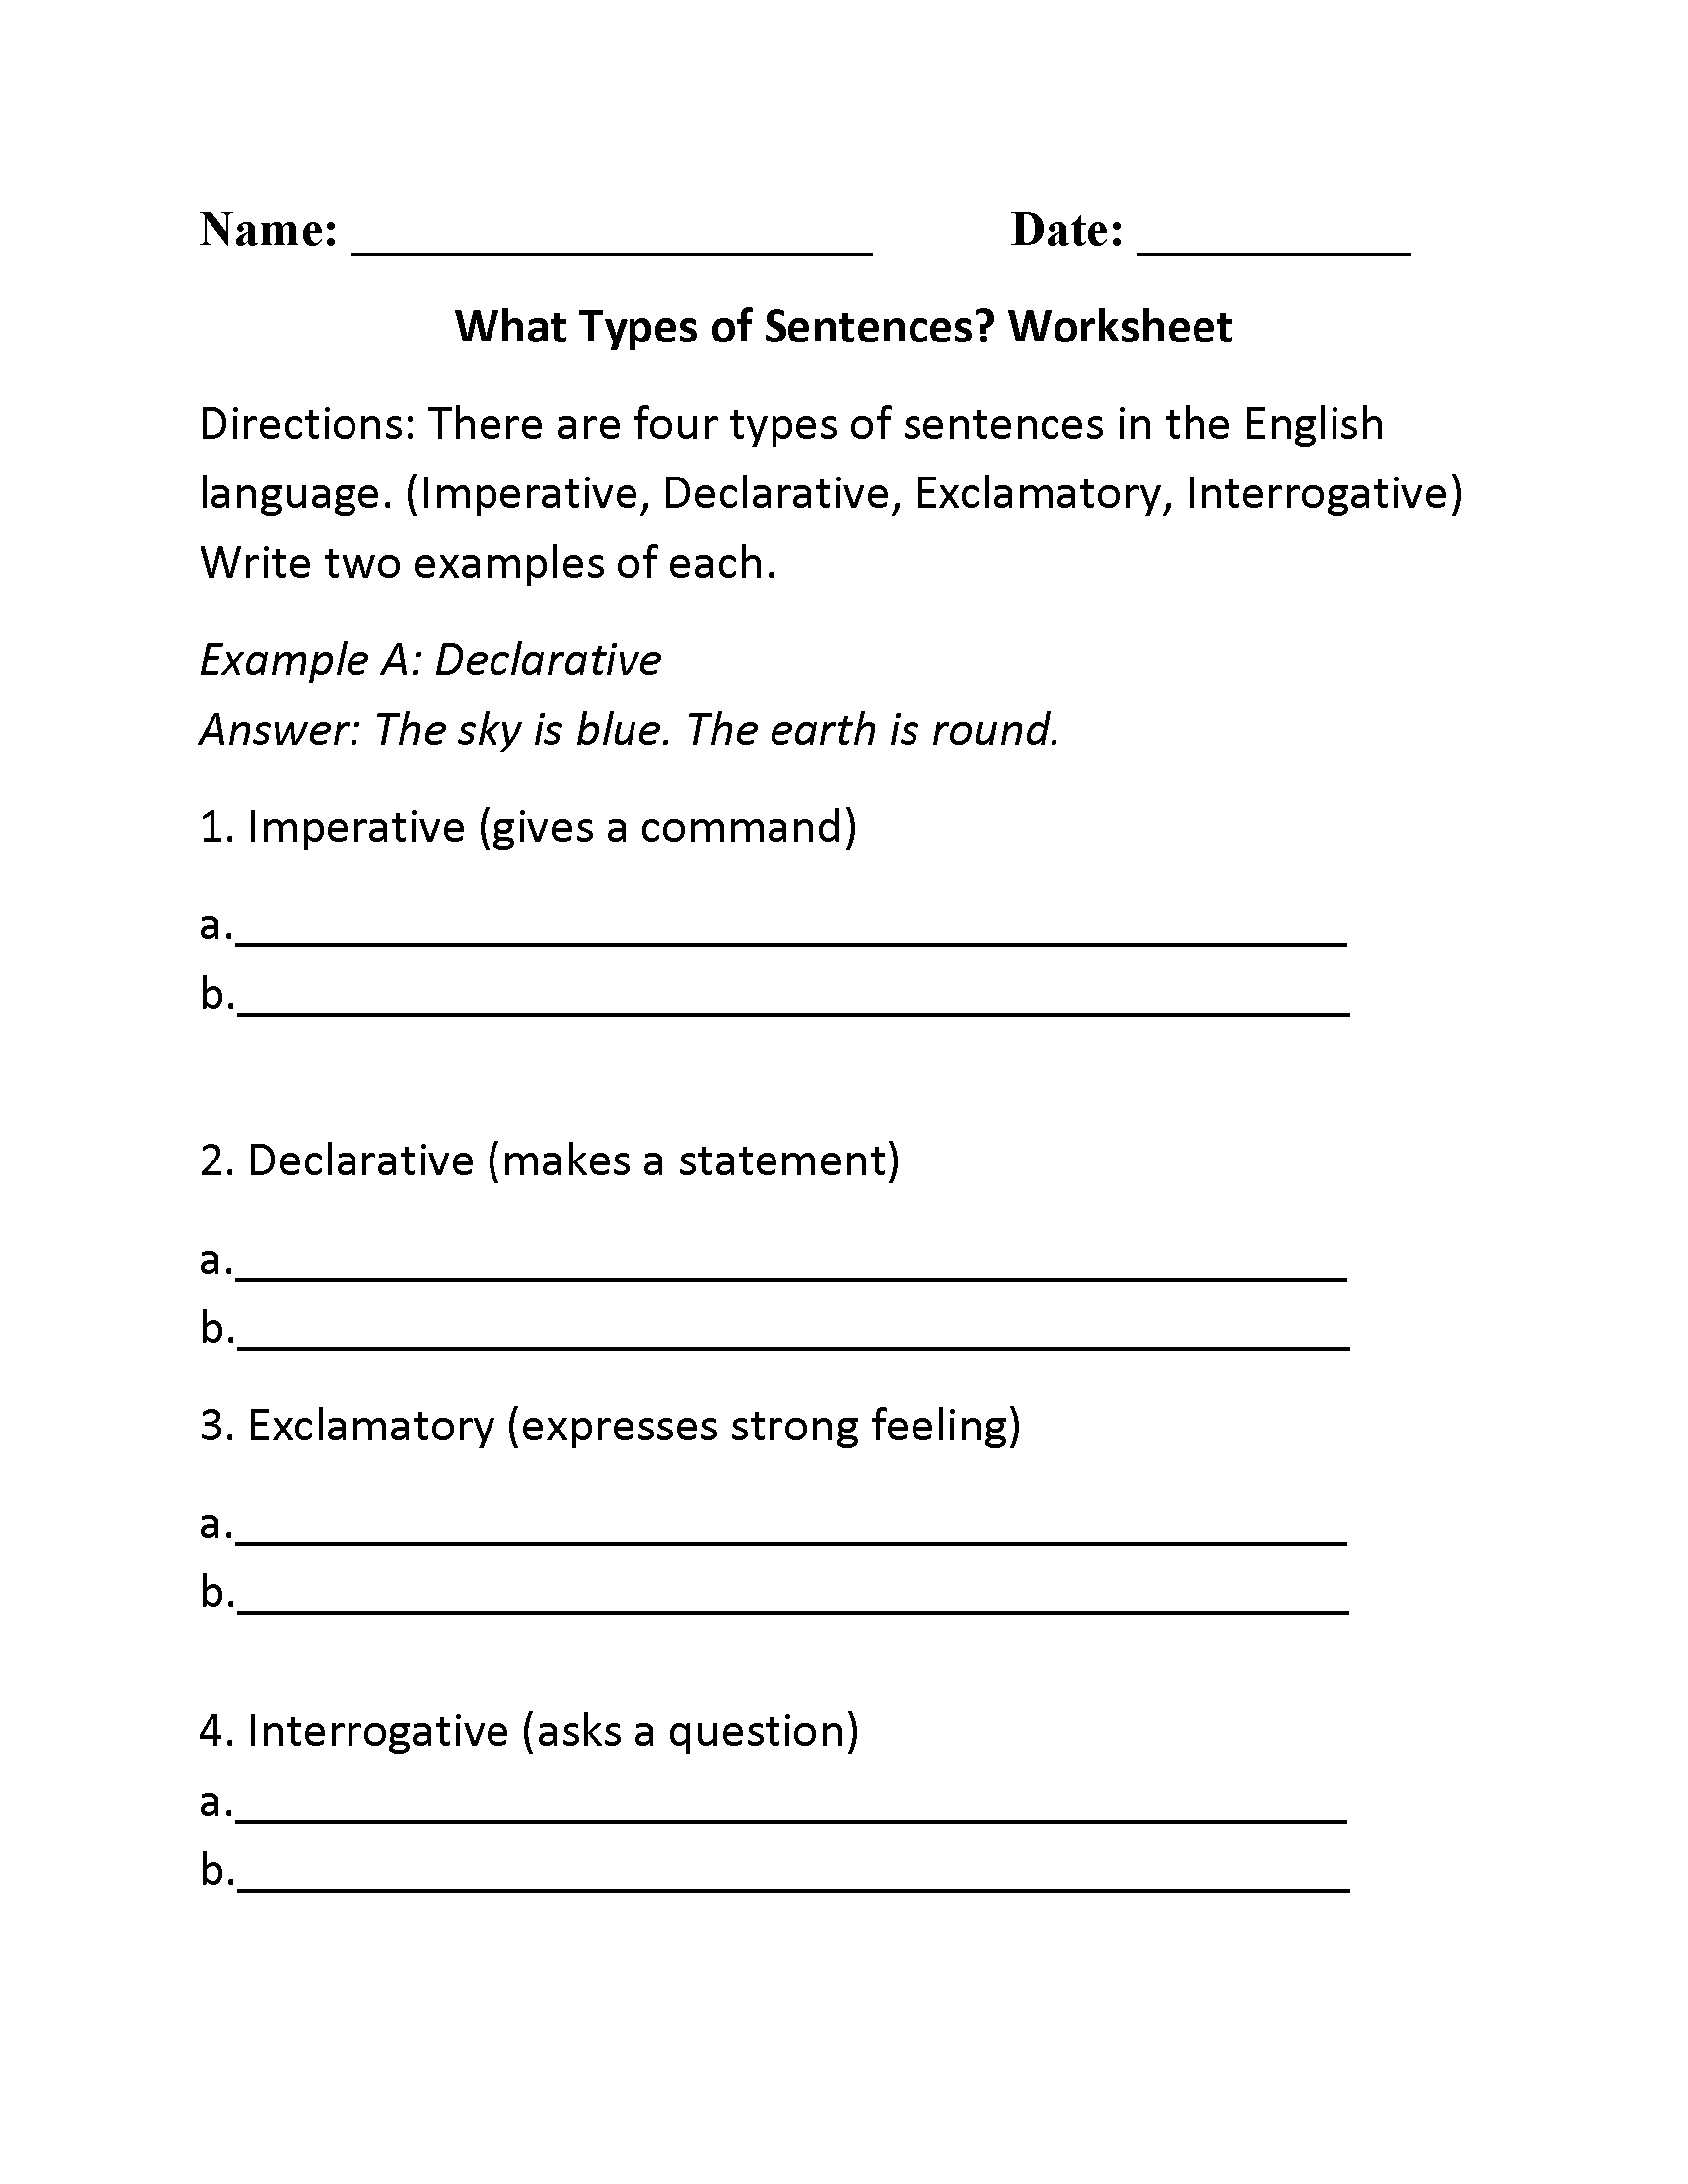 What Types of Sentences? Worksheet